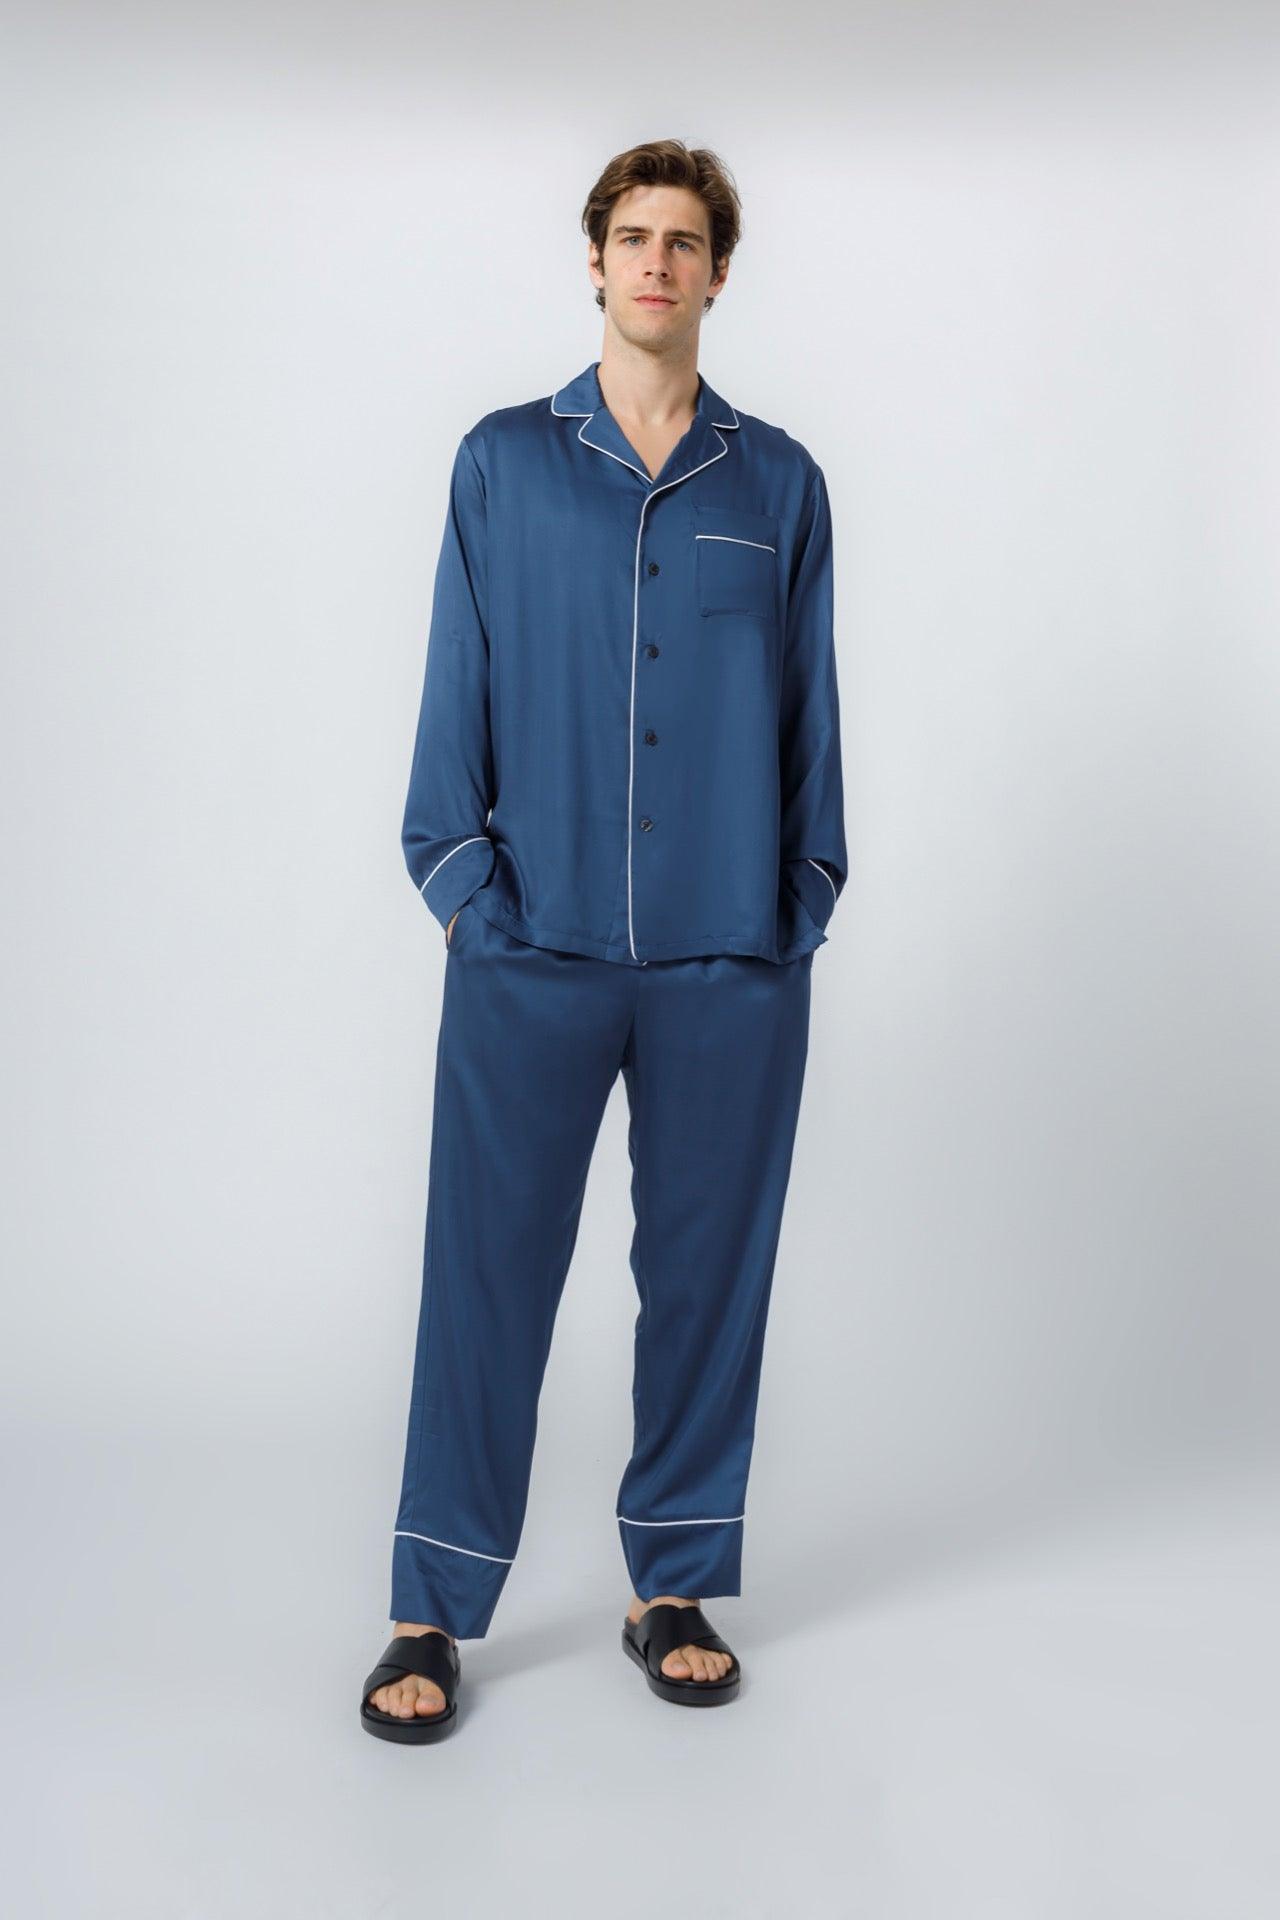 Men's Bamboo Viscose Pajamas Set Shirt and Pants with Pockets